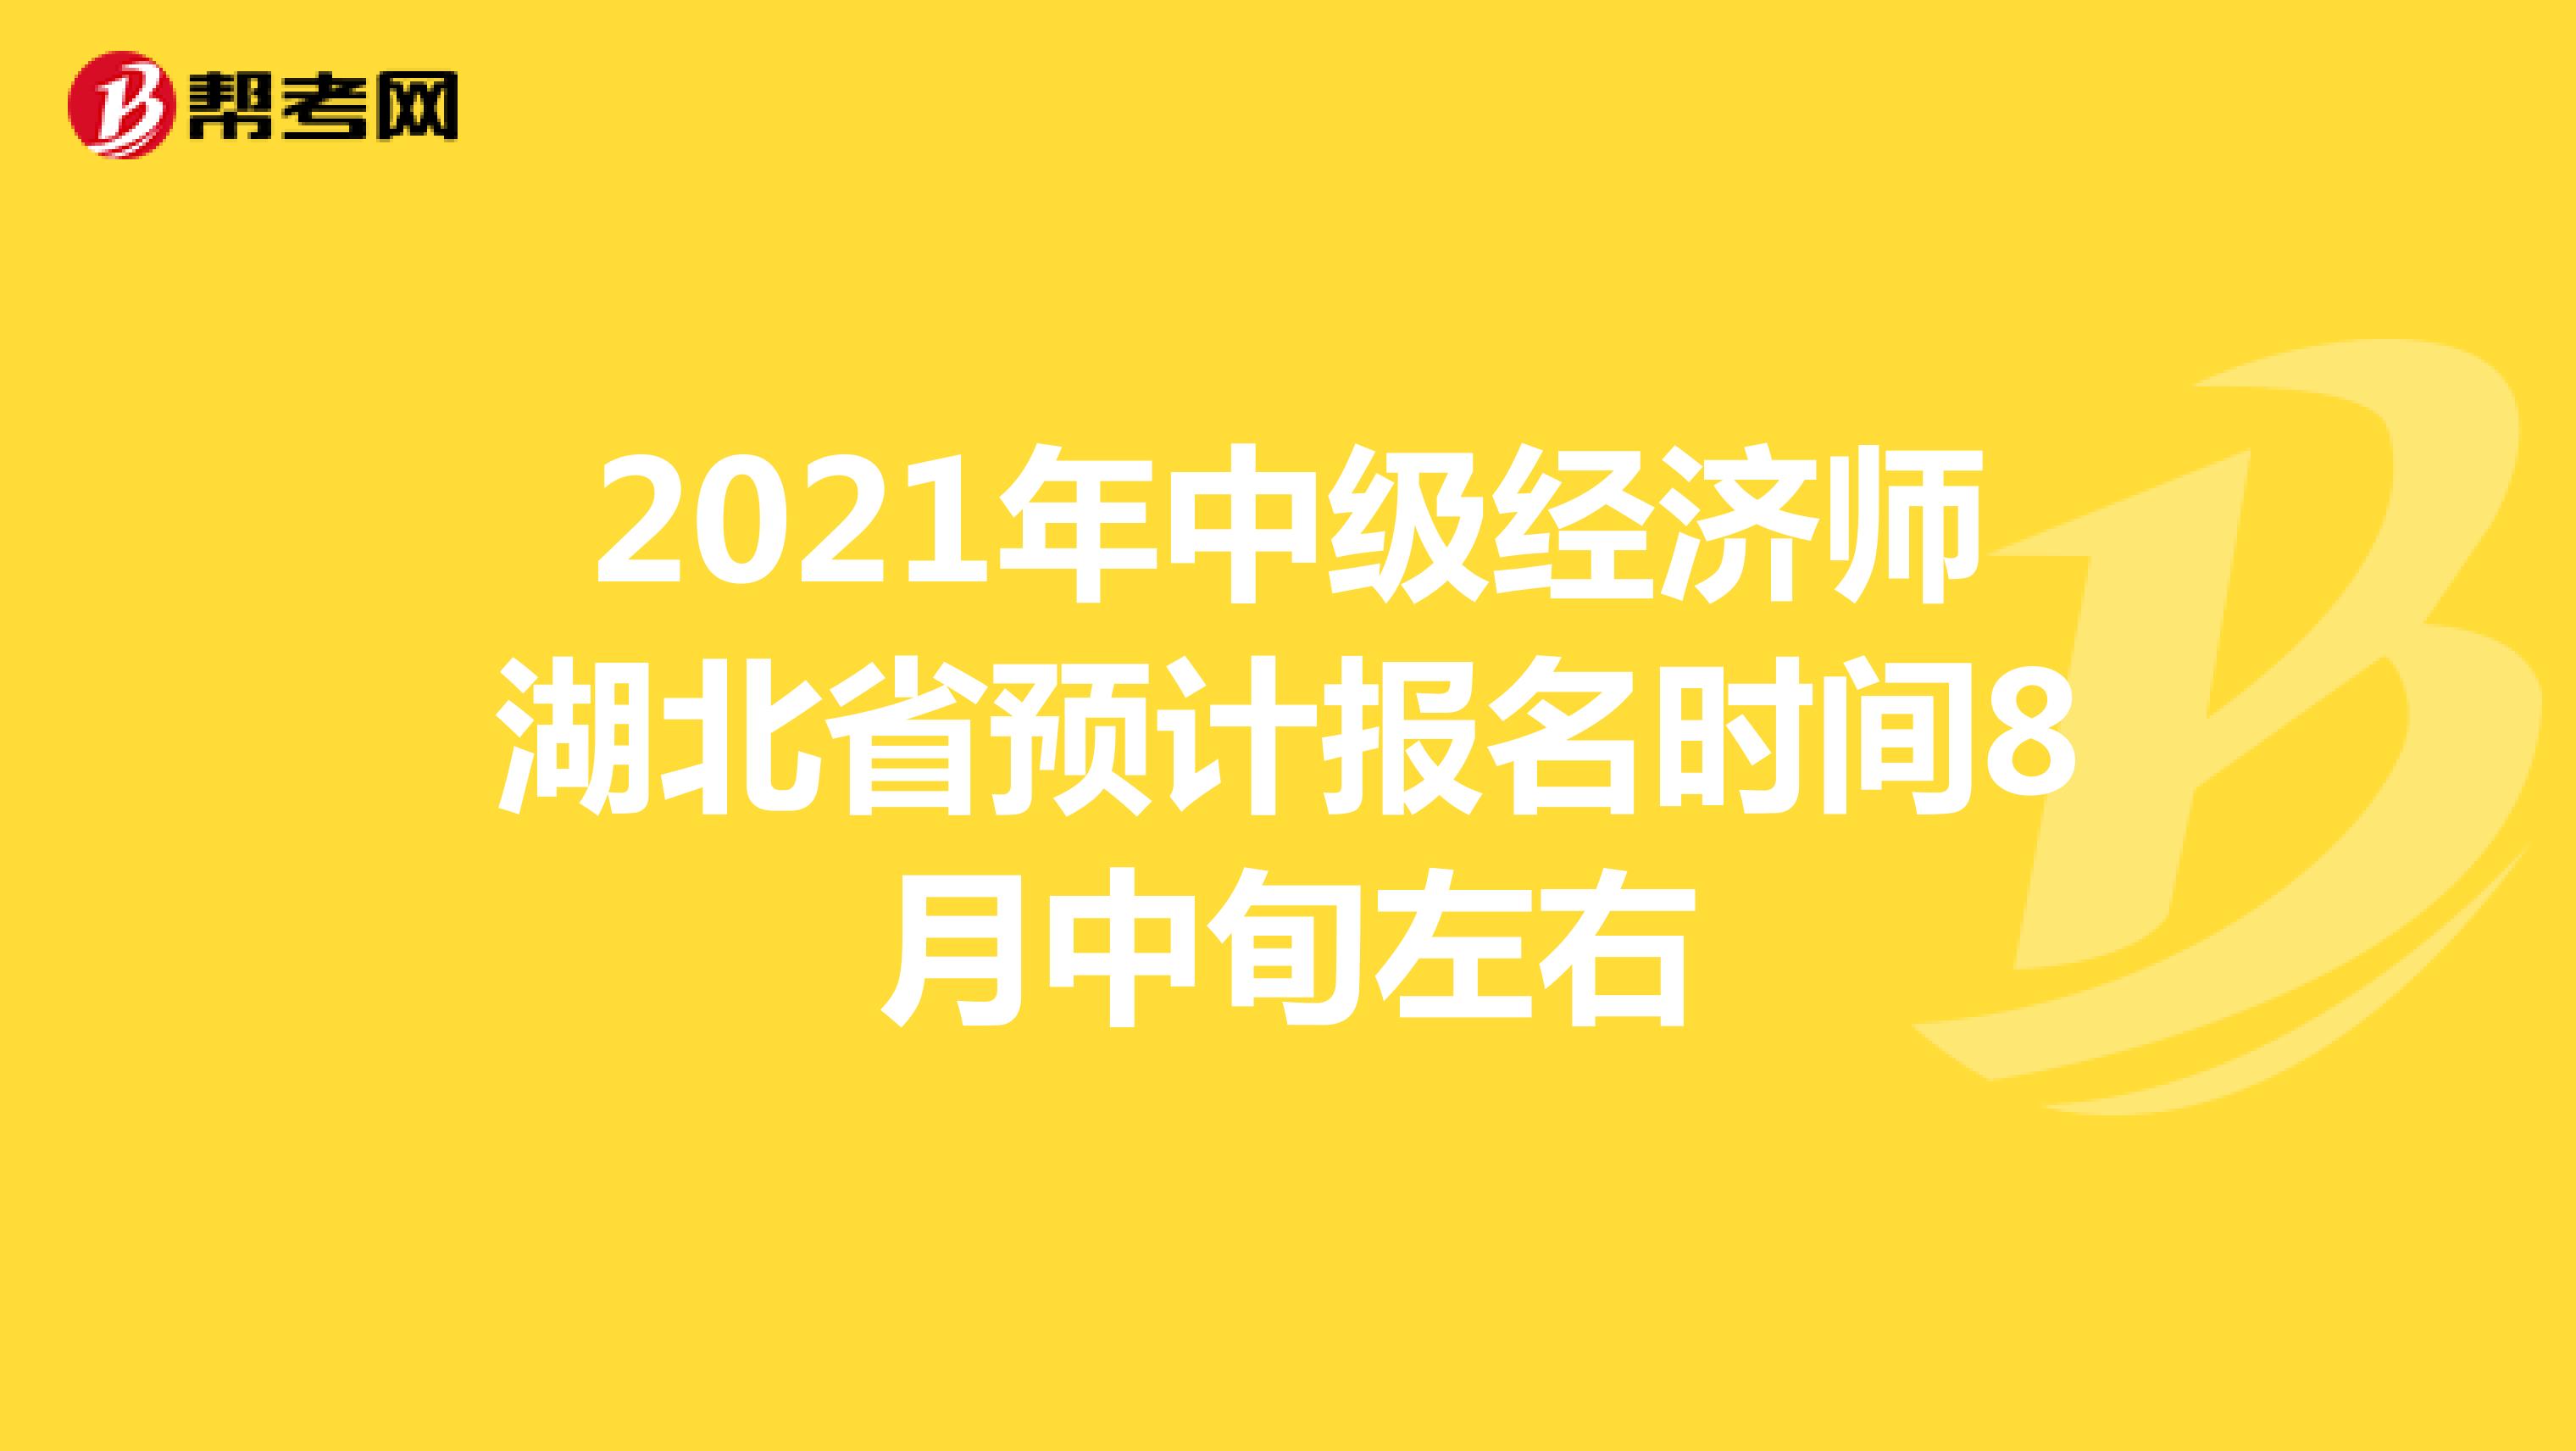 2021年中级经济师湖北省预计报名时间8月中旬左右